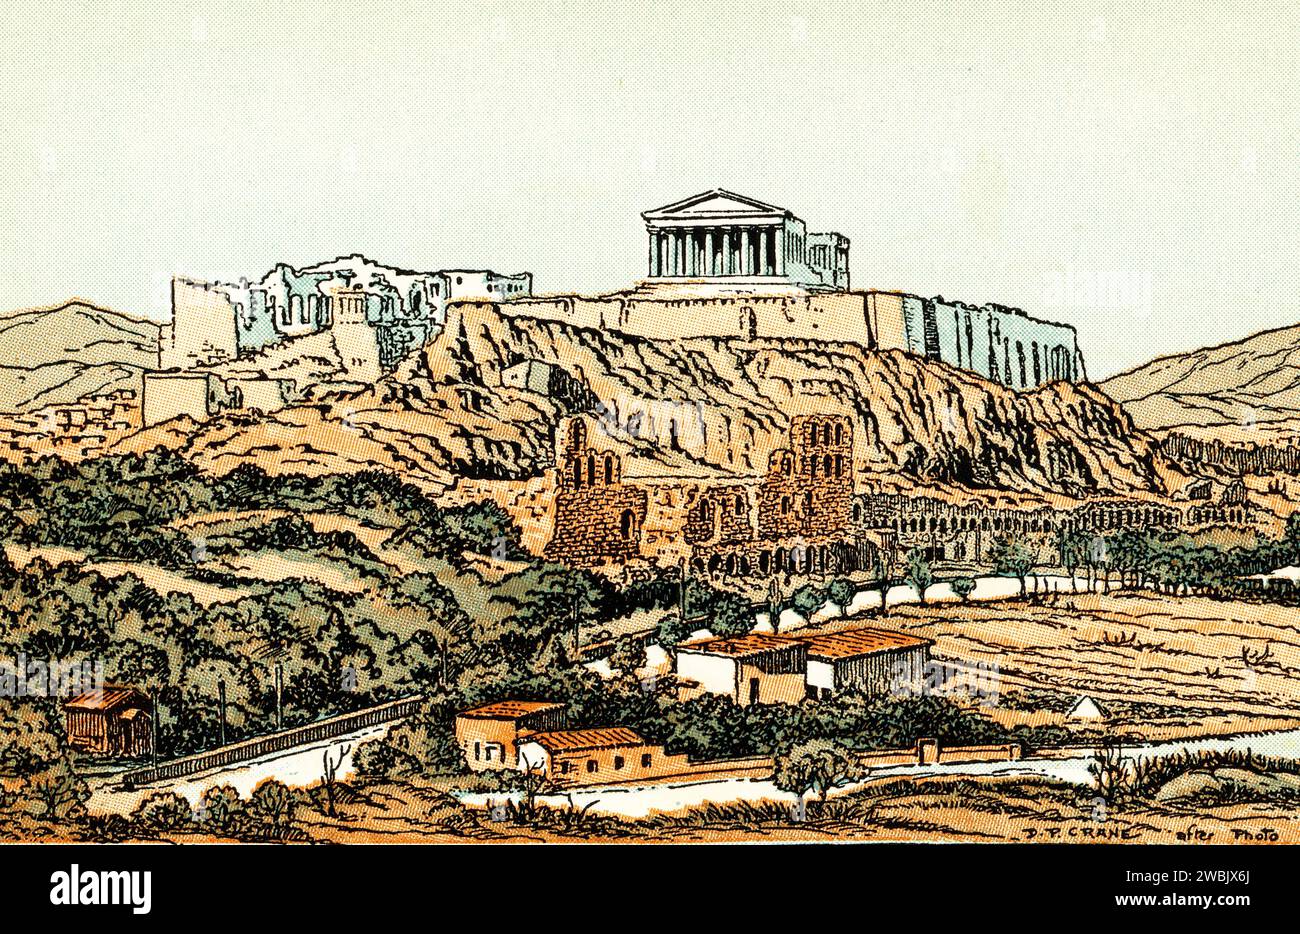 Die Akropolis von Athen, 1930. Von Donn Philip Crane (1878–1944). Die Akropolis von Athen ist eine antike Zitadelle oberhalb der Stadt Athen, Griechenland. Während es Hinweise gibt, dass der Hügel bereits im vierten Jahrtausend v. Chr. bewohnt wurde, war es Perikles (um 429 v. Chr.) im fünften Jahrhundert v. Chr., der den Bau der Gebäude koordinierte, deren heutige Überreste die wichtigsten sind, darunter der Parthenon, die Propyläen, das Erechtheion und der Tempel der Athena Nike. Stockfoto